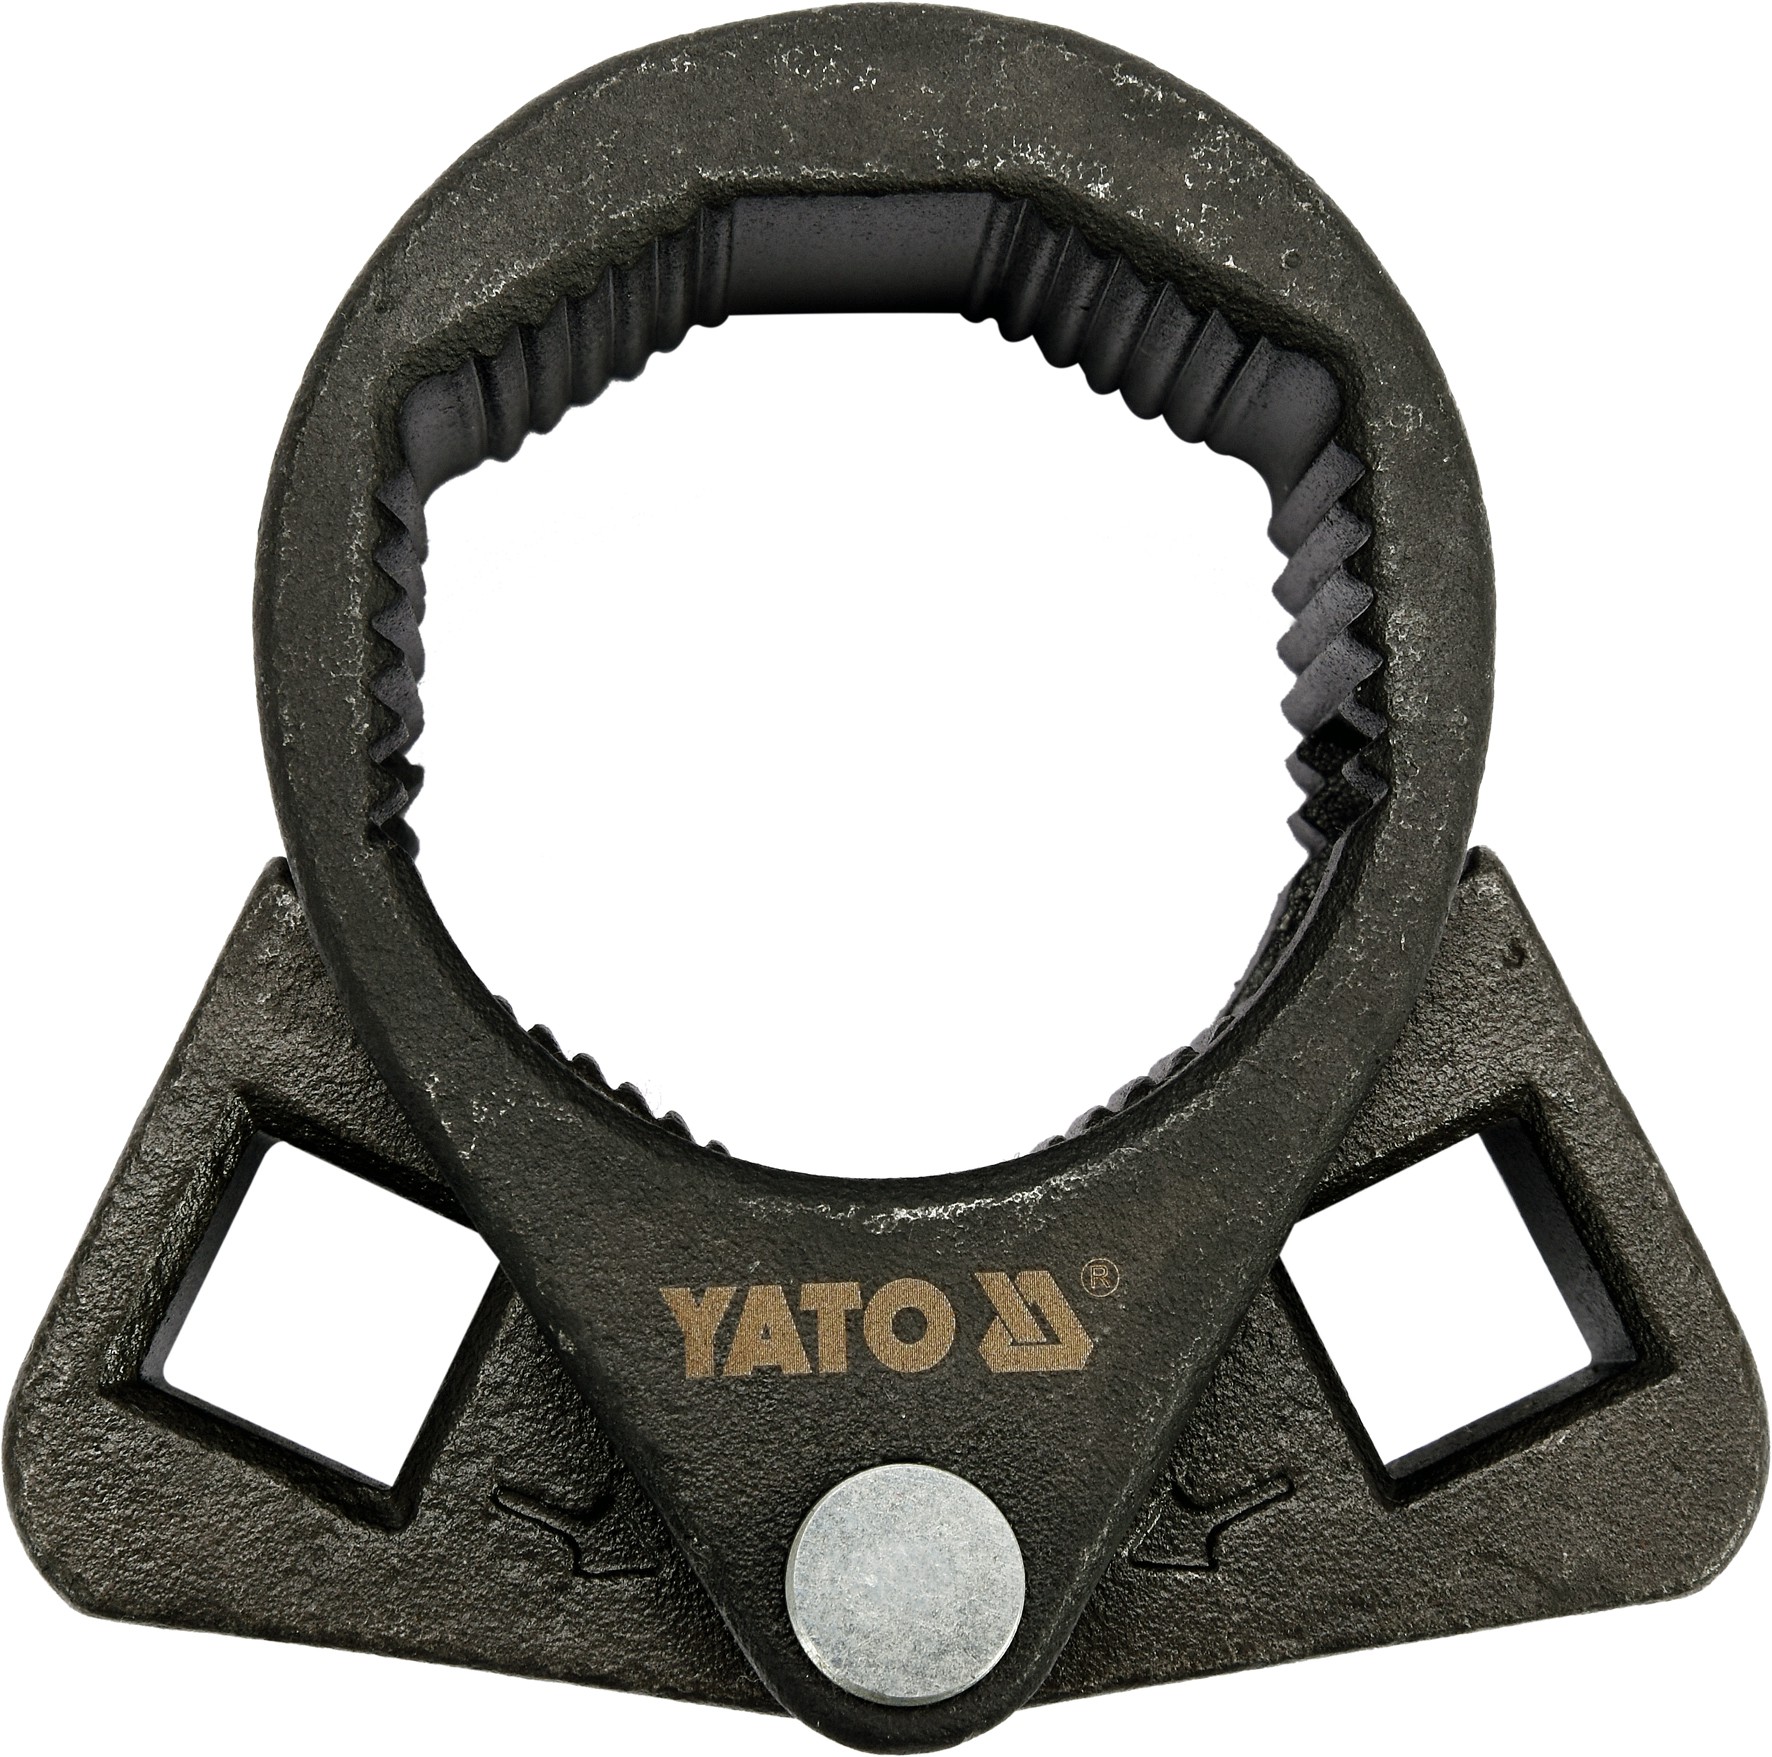 Купить съемник для рулевых. Yato ключ съемник для рулевых тяг 27-42. Съемник рулевых тяг Yato. Yato yt06160 съемник тяги рулевой. Ключ съемник для рулевых тяг 27 42 мм.